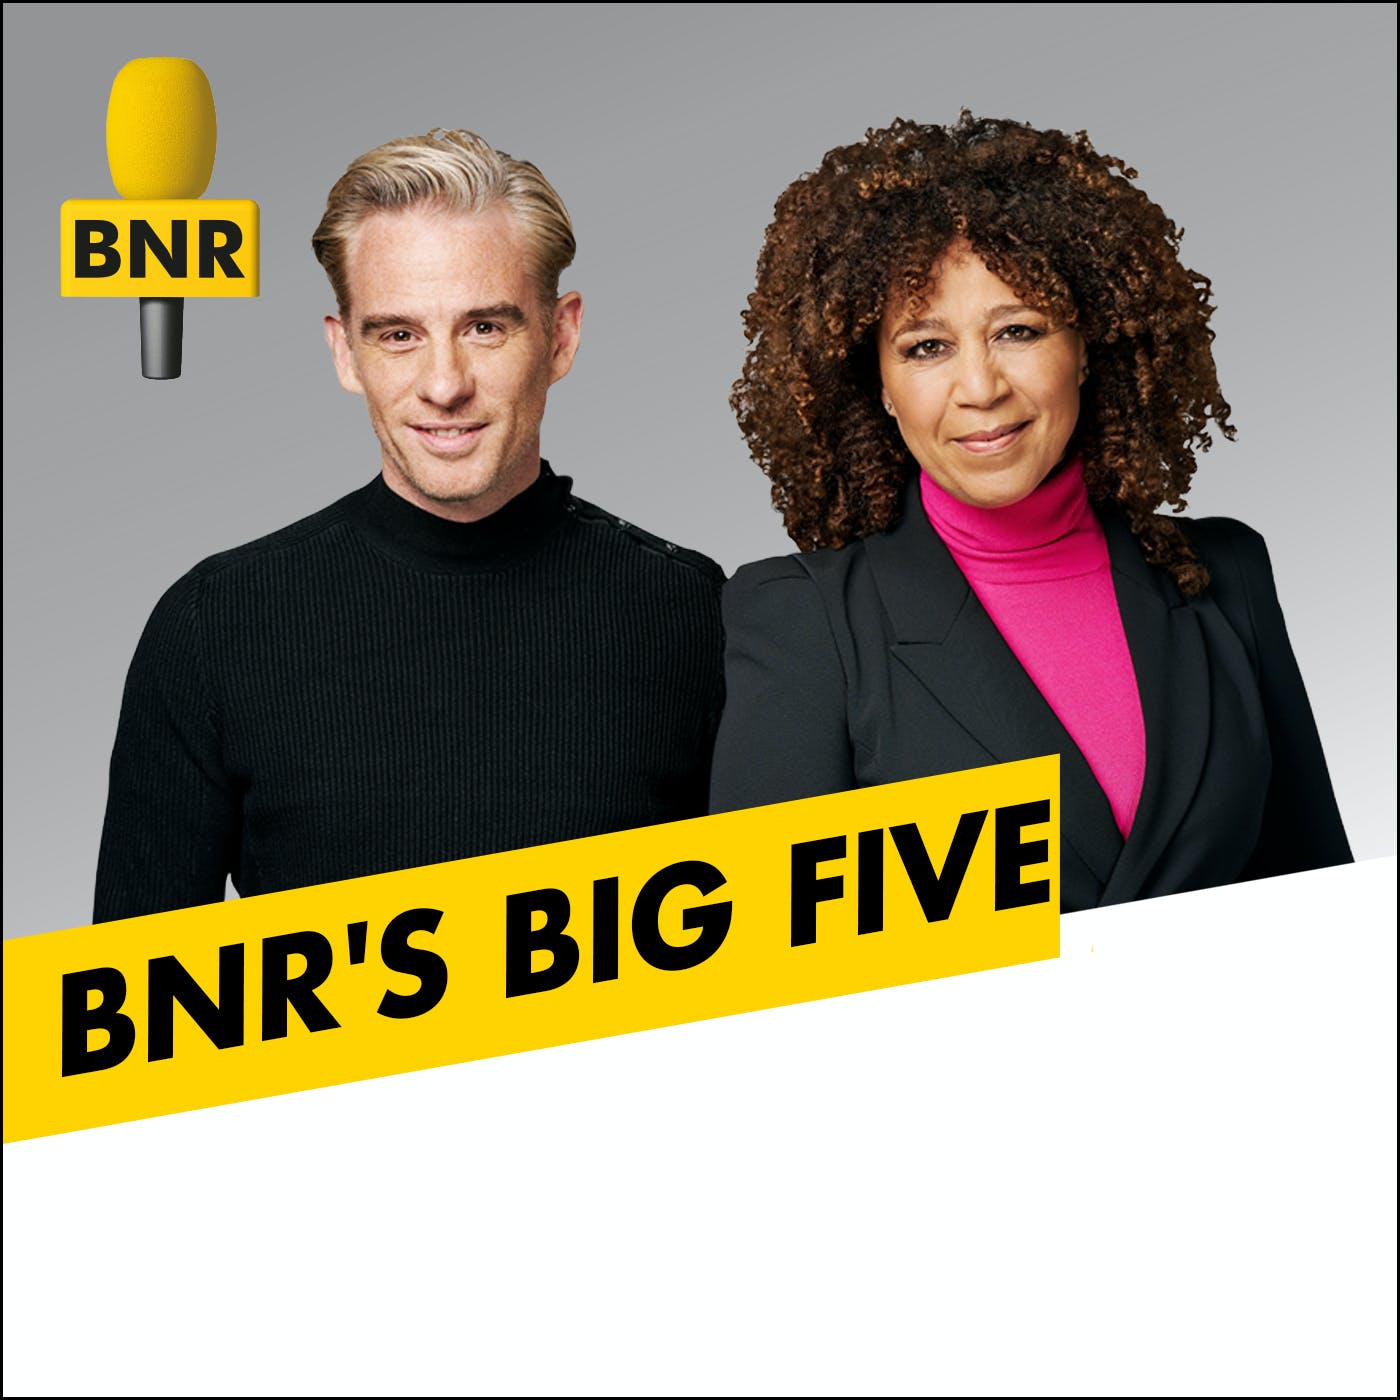 BNR's Big Five interview with Don Weenink